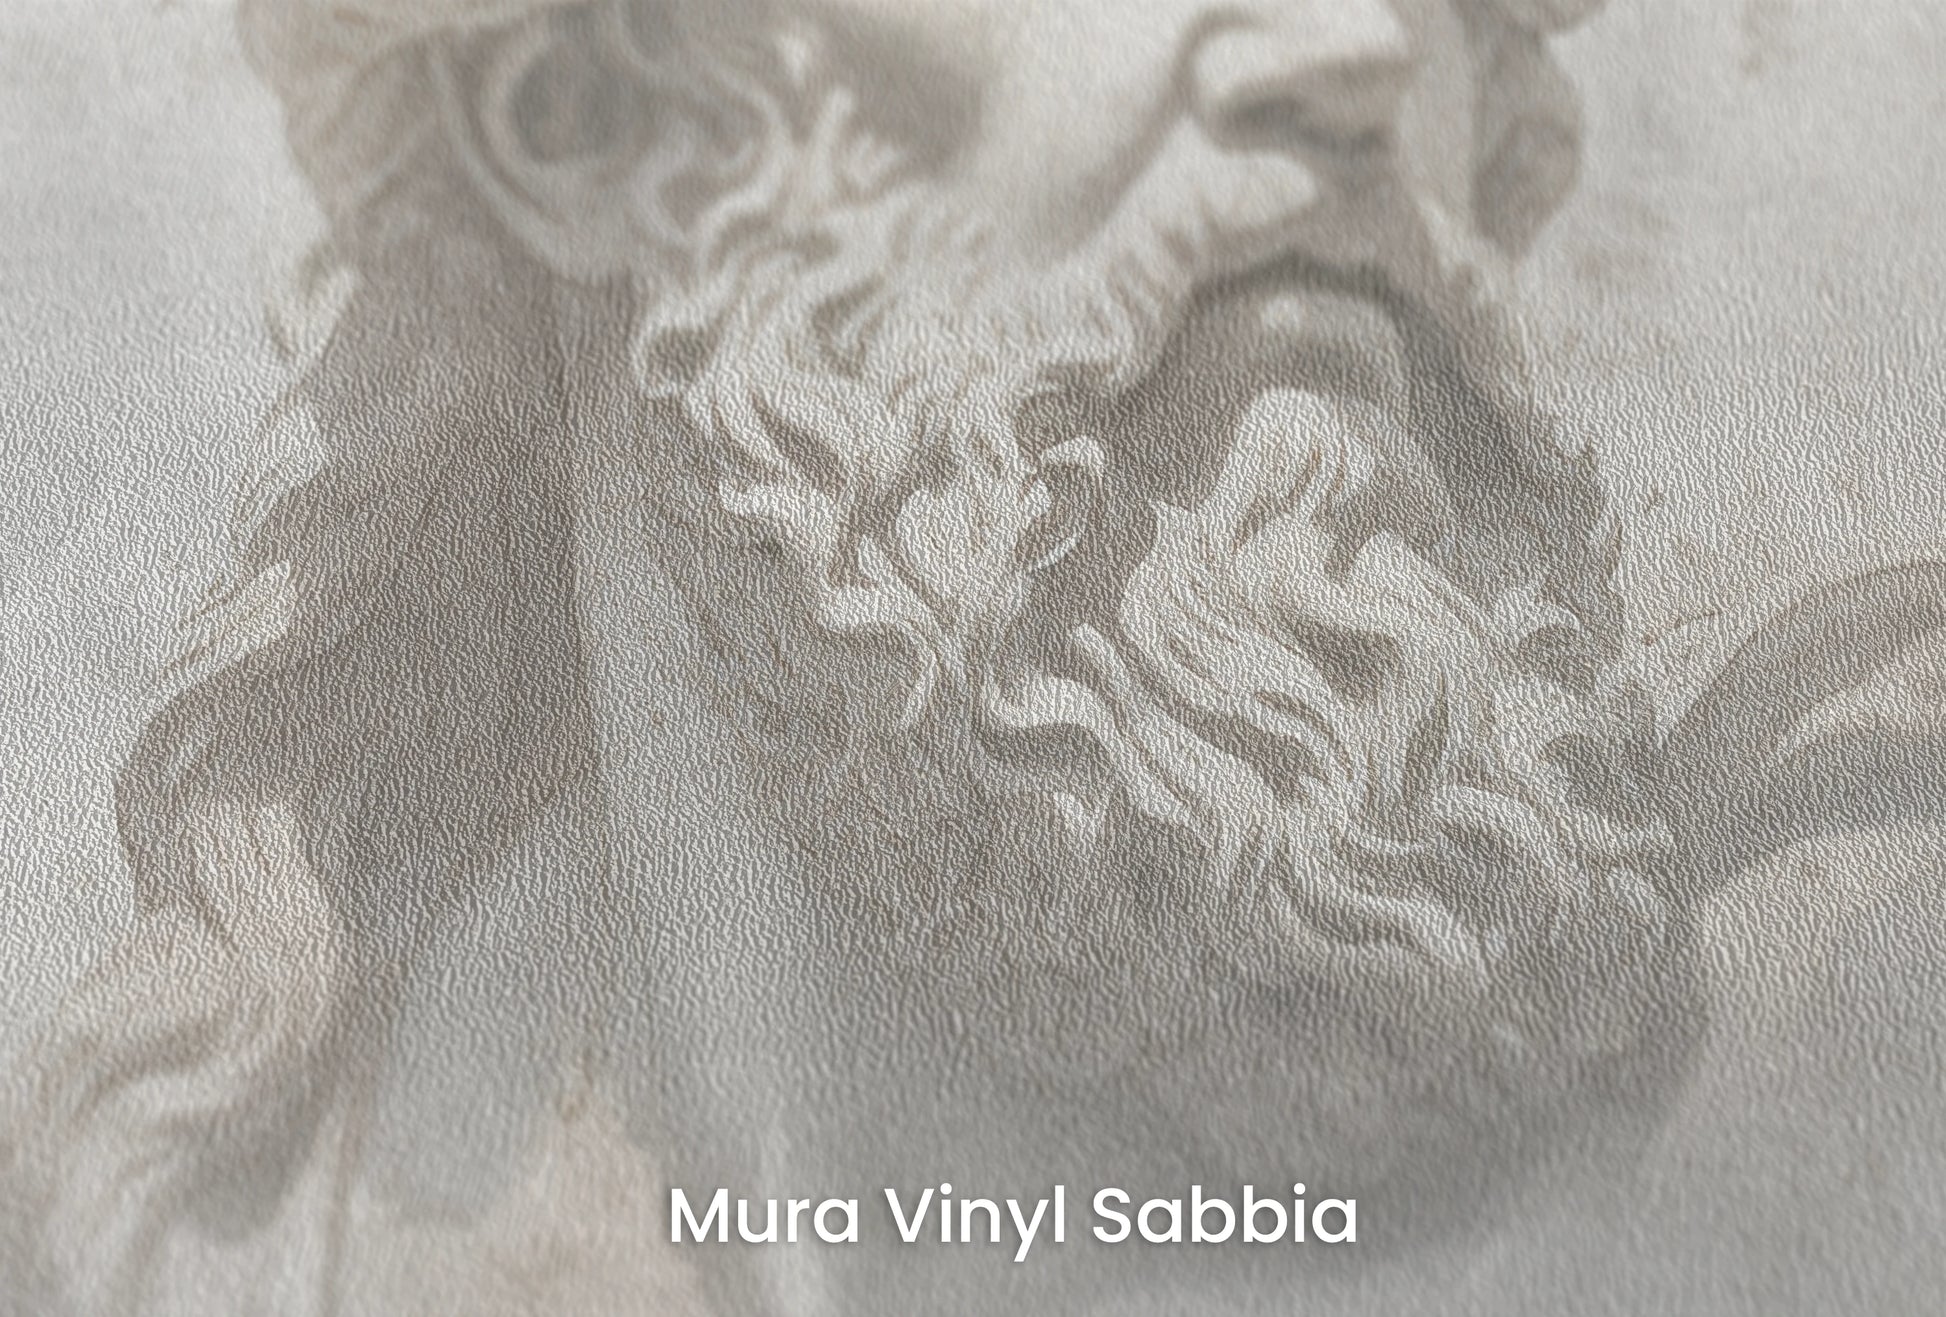 Zbliżenie na artystyczną fototapetę o nazwie Stoic Gaze na podłożu Mura Vinyl Sabbia struktura grubego ziarna piasku.